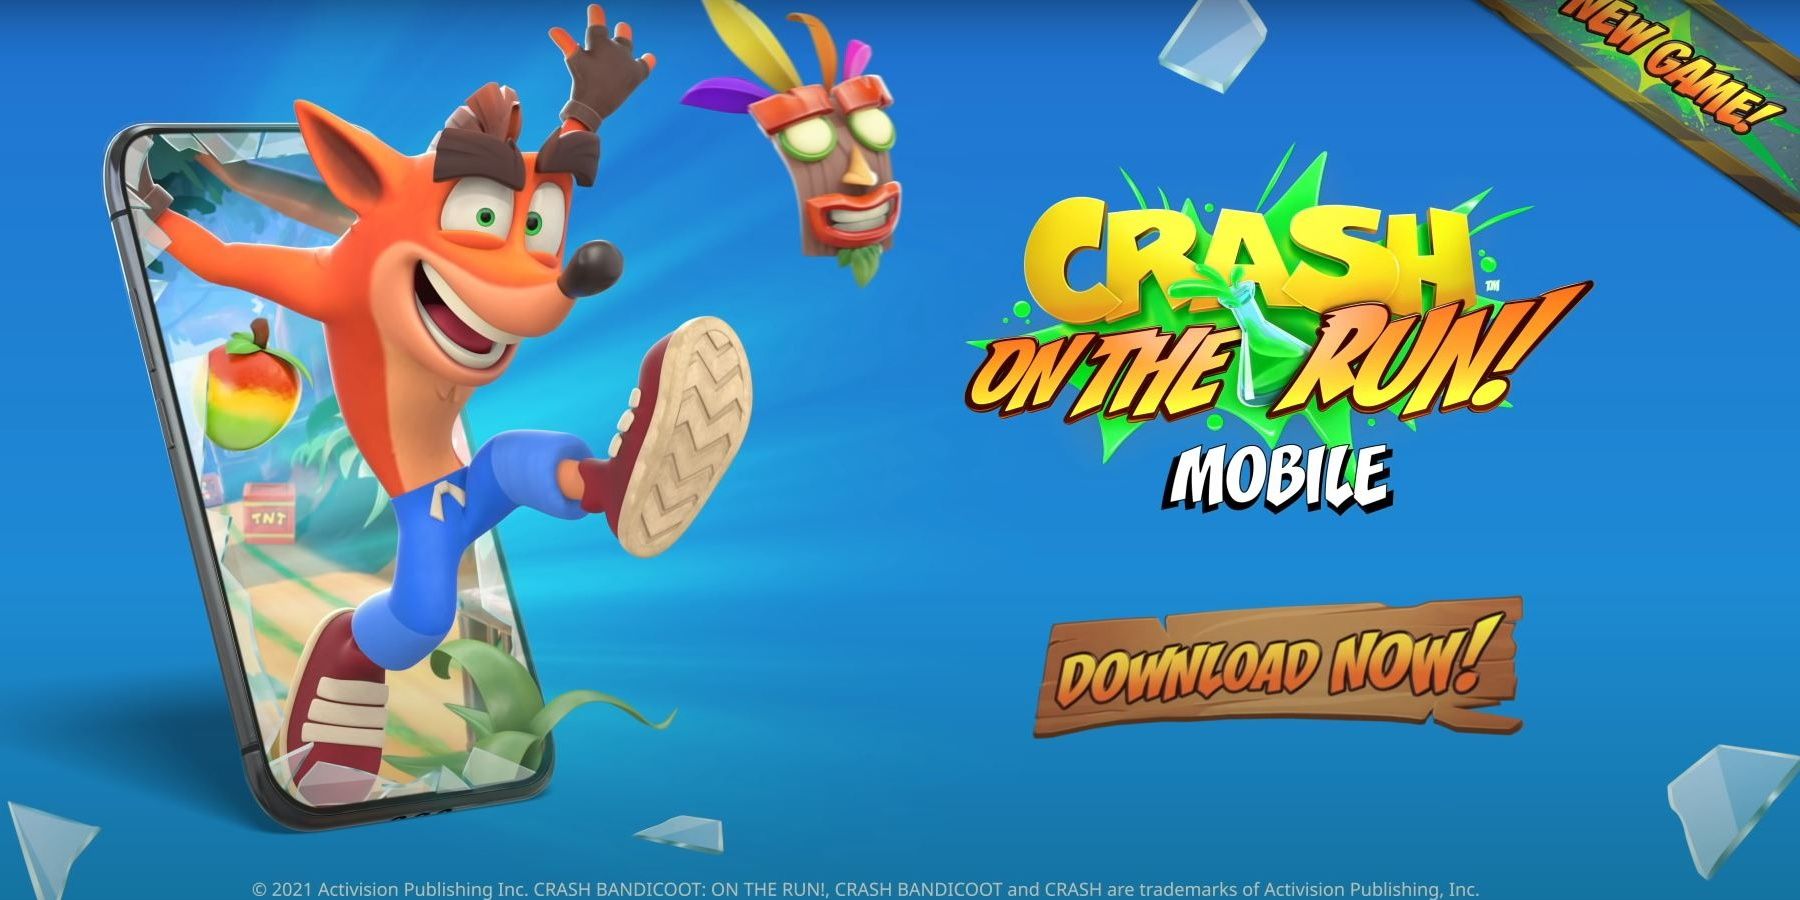 Crash Bandicoot On The Run Mobile